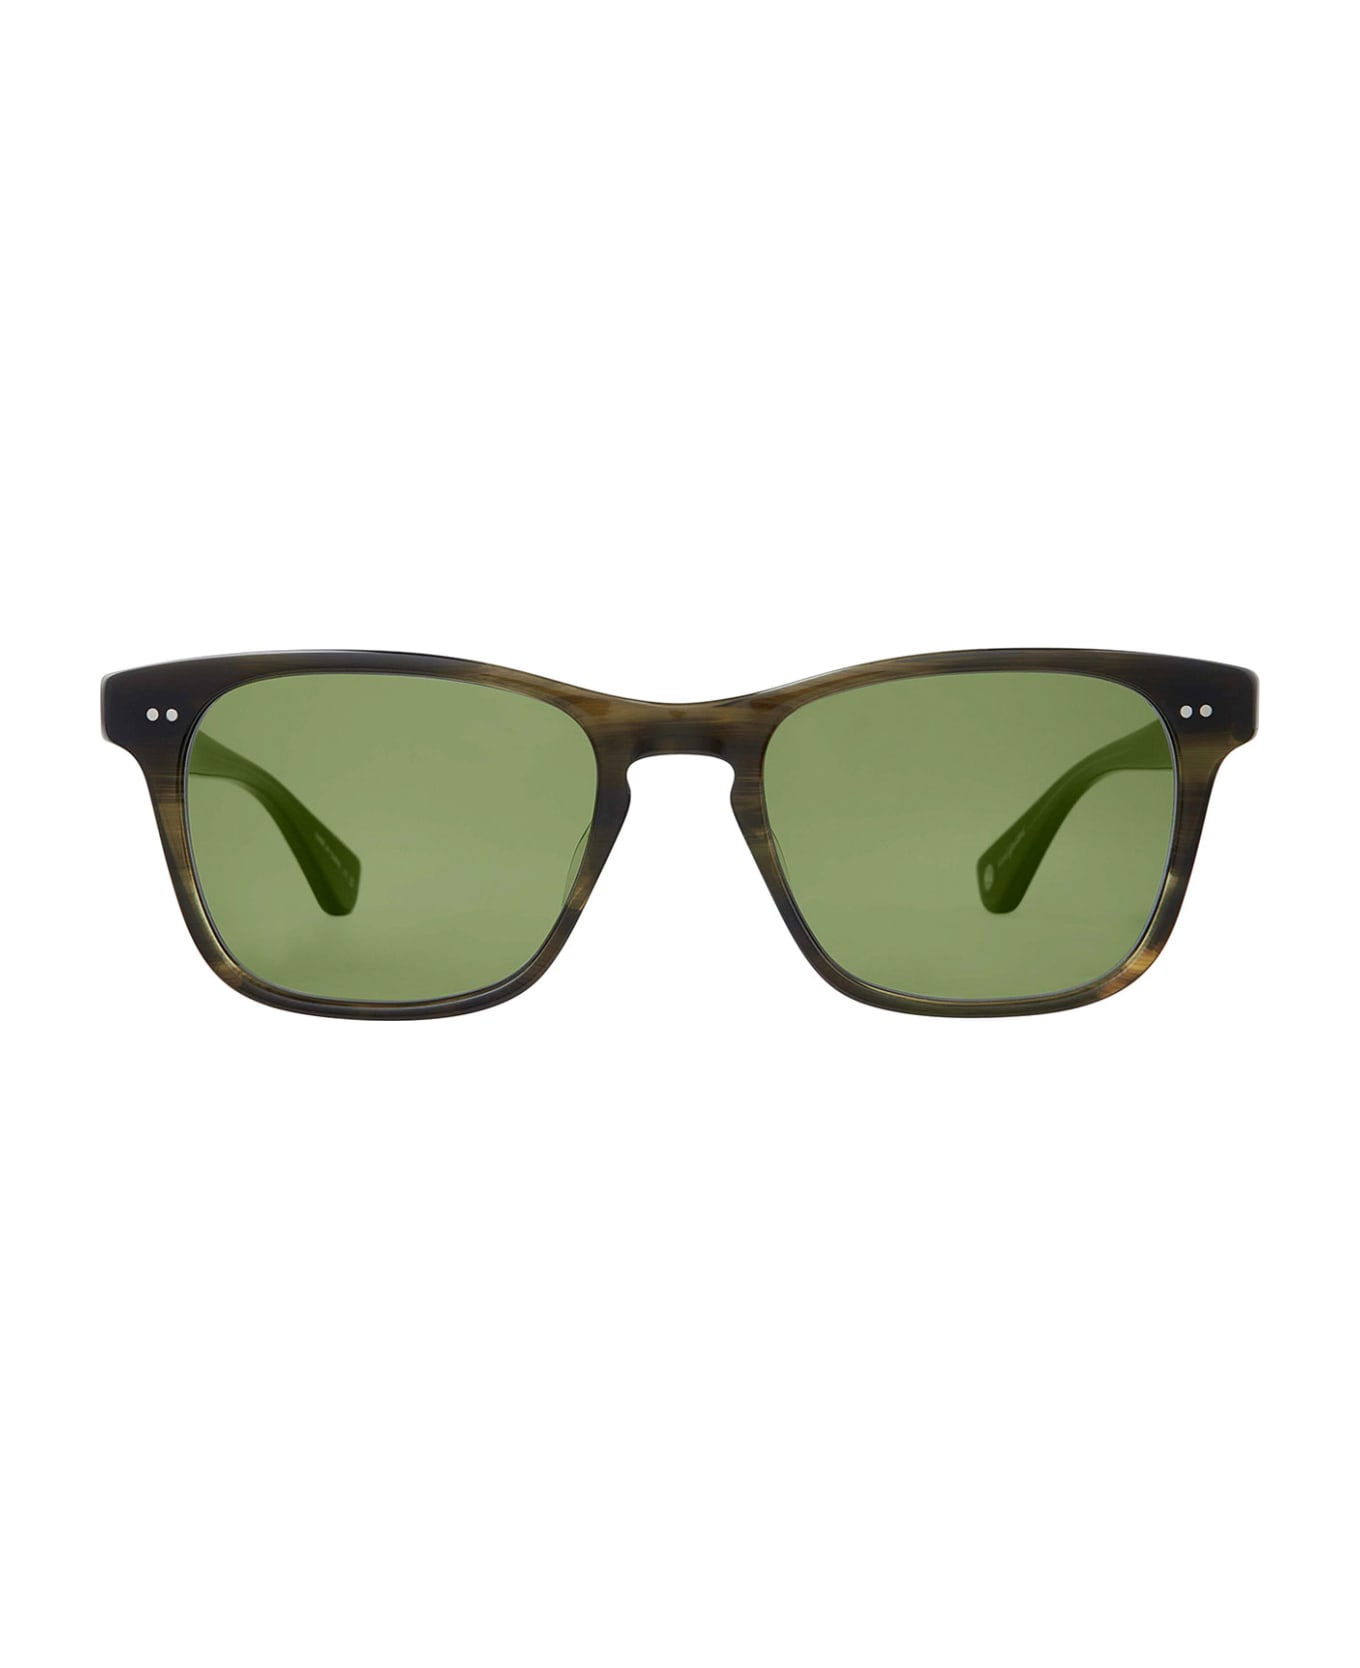 Garrett Leight Torrey Sun Douglas Fir/green Sunglasses - Douglas Fir/Green サングラス